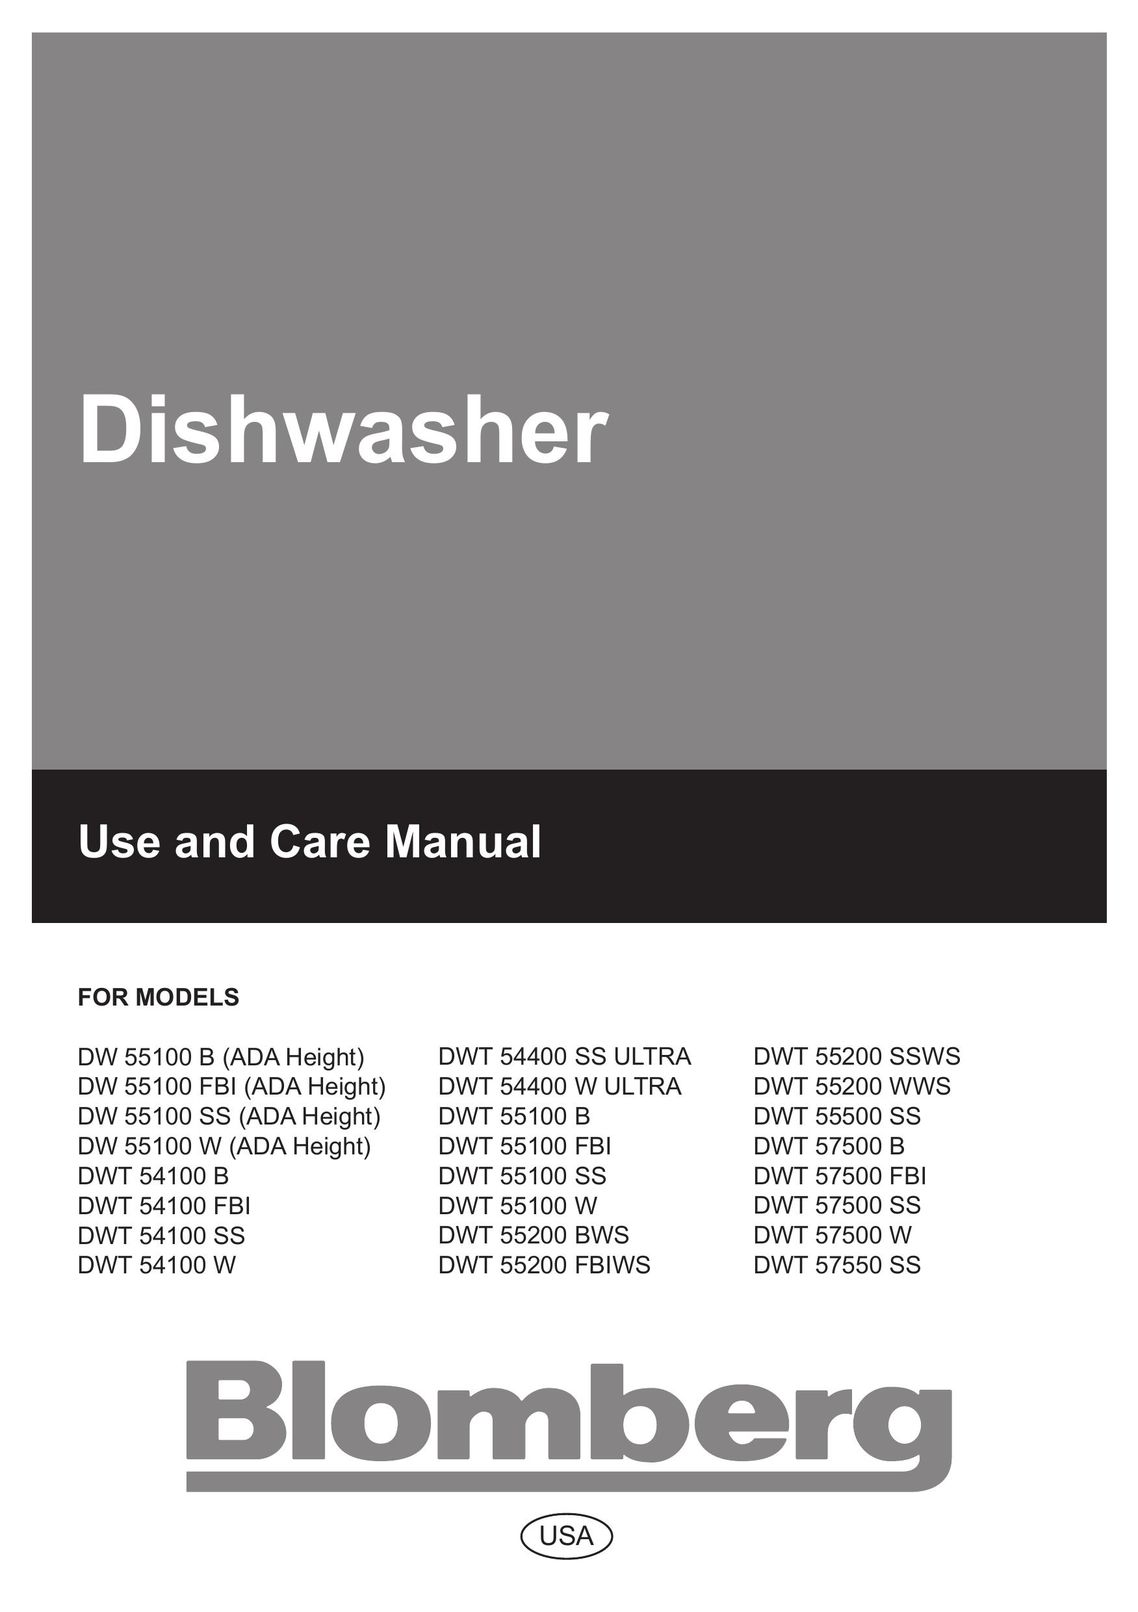 Blomberg DW 57500 W Dishwasher User Manual